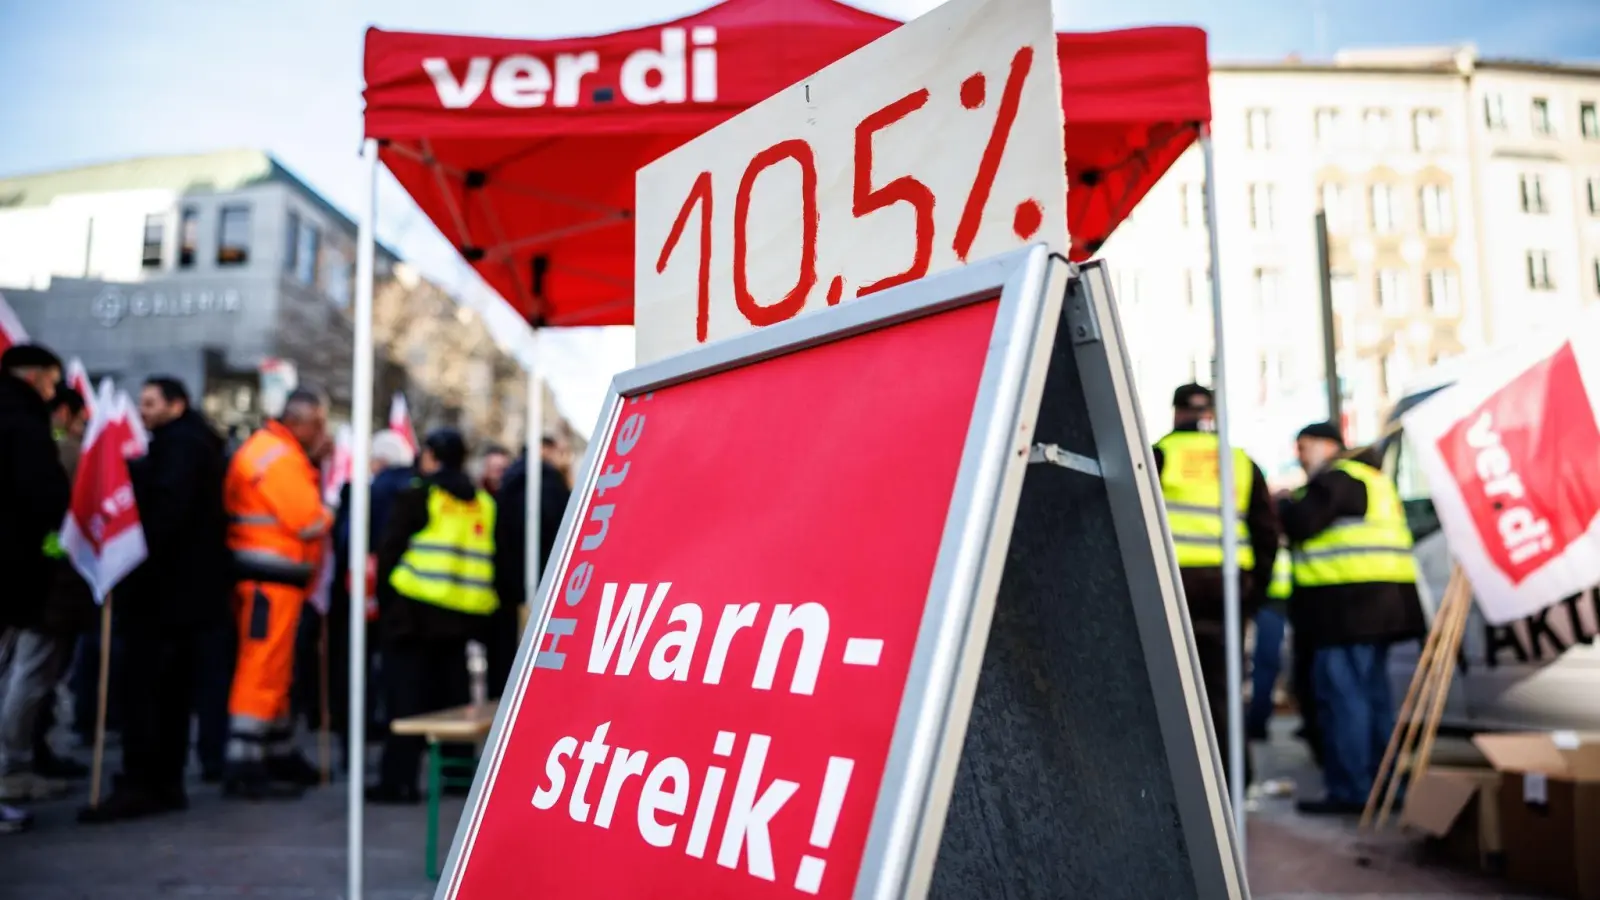 Beschäftigte der Münchner Stadtreinigung stehen bei einer Kundgebung während eines Streiks an einem Verdi-Stand. (Foto: Matthias Balk/dpa/Archivbild)